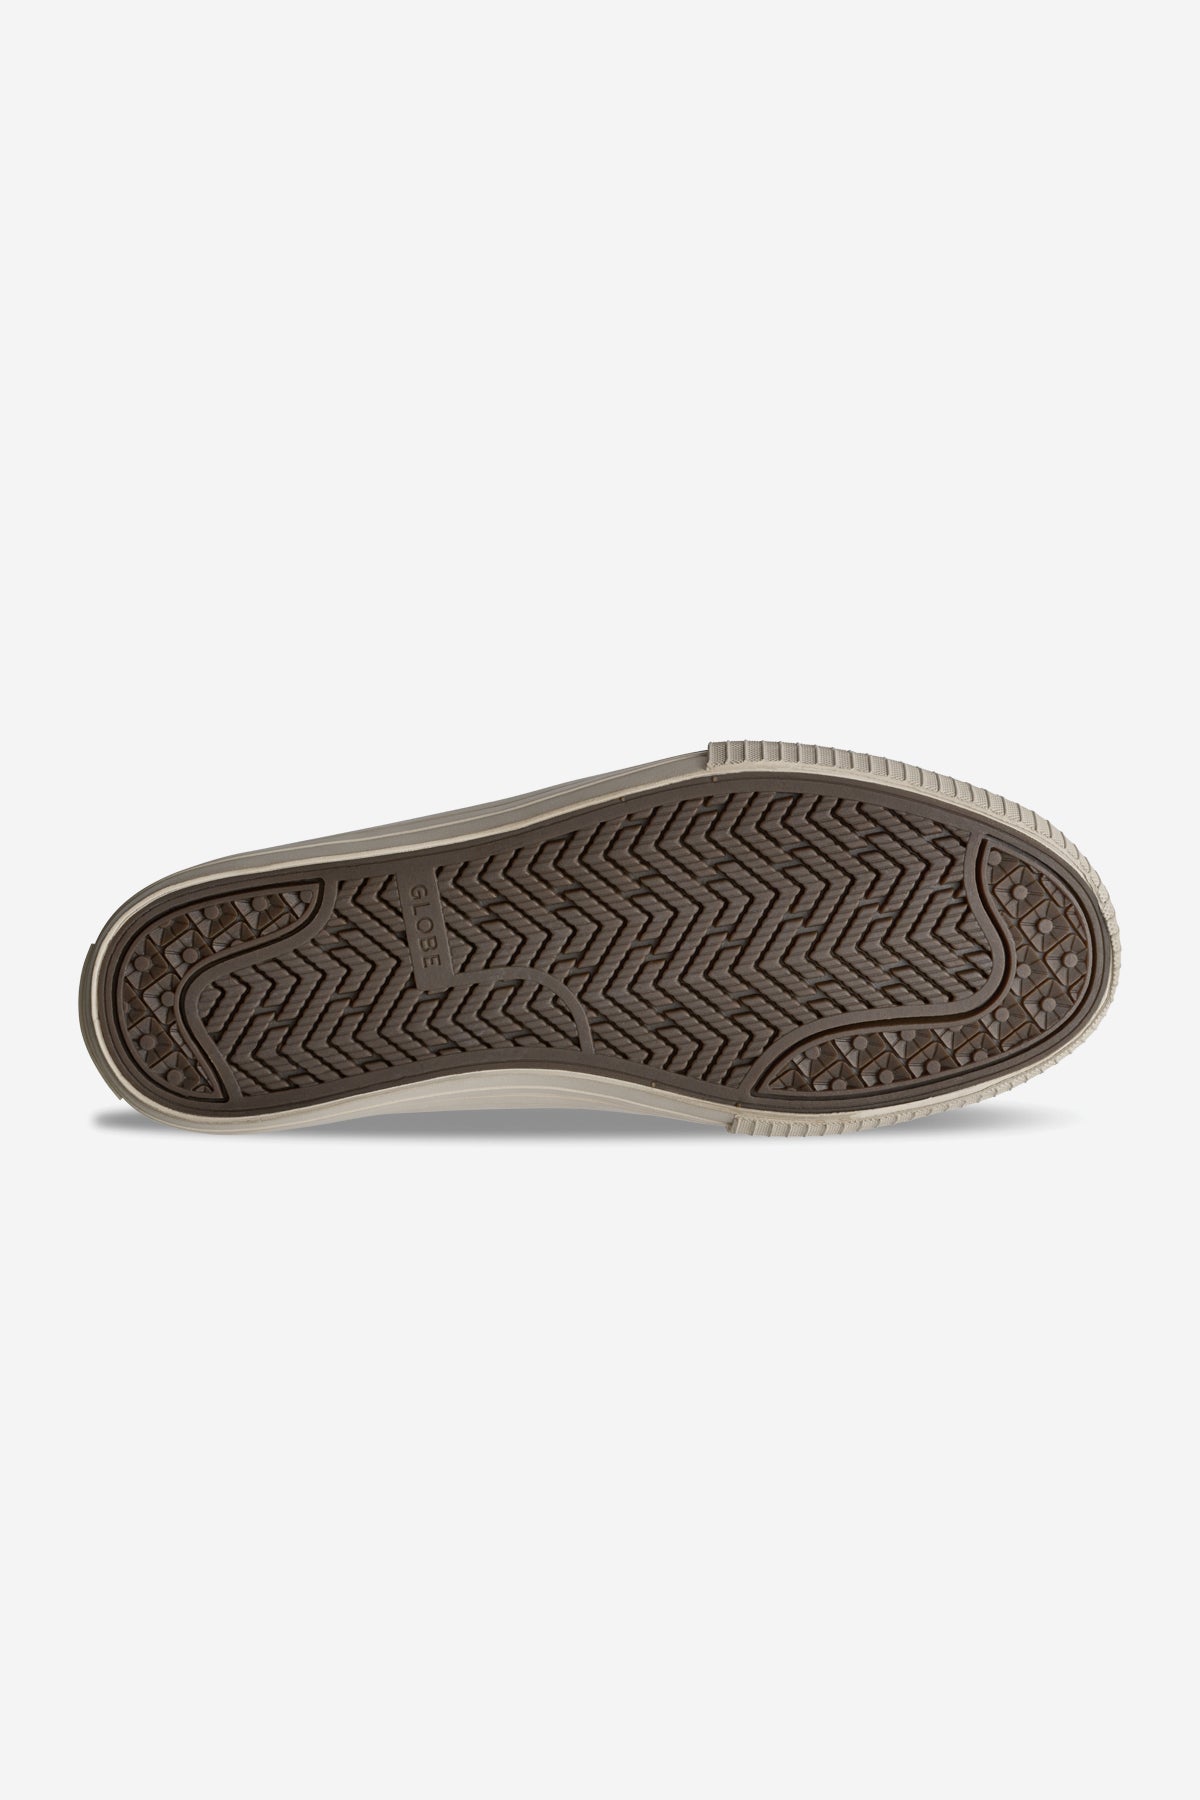 Globe - Gillette - Nero/Crema - skateboard Scarpe